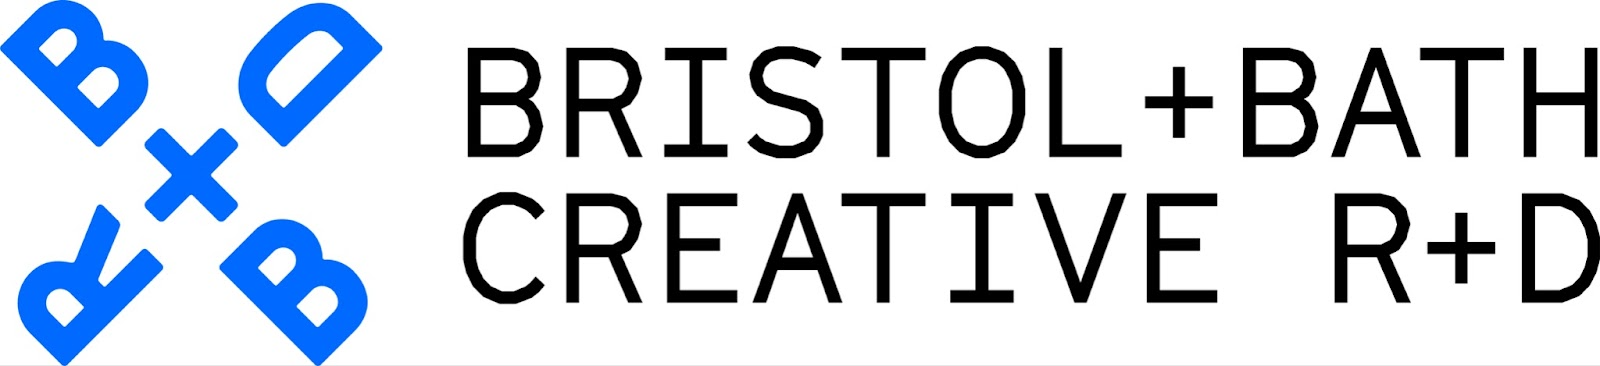 logo for B+B Creative R+D